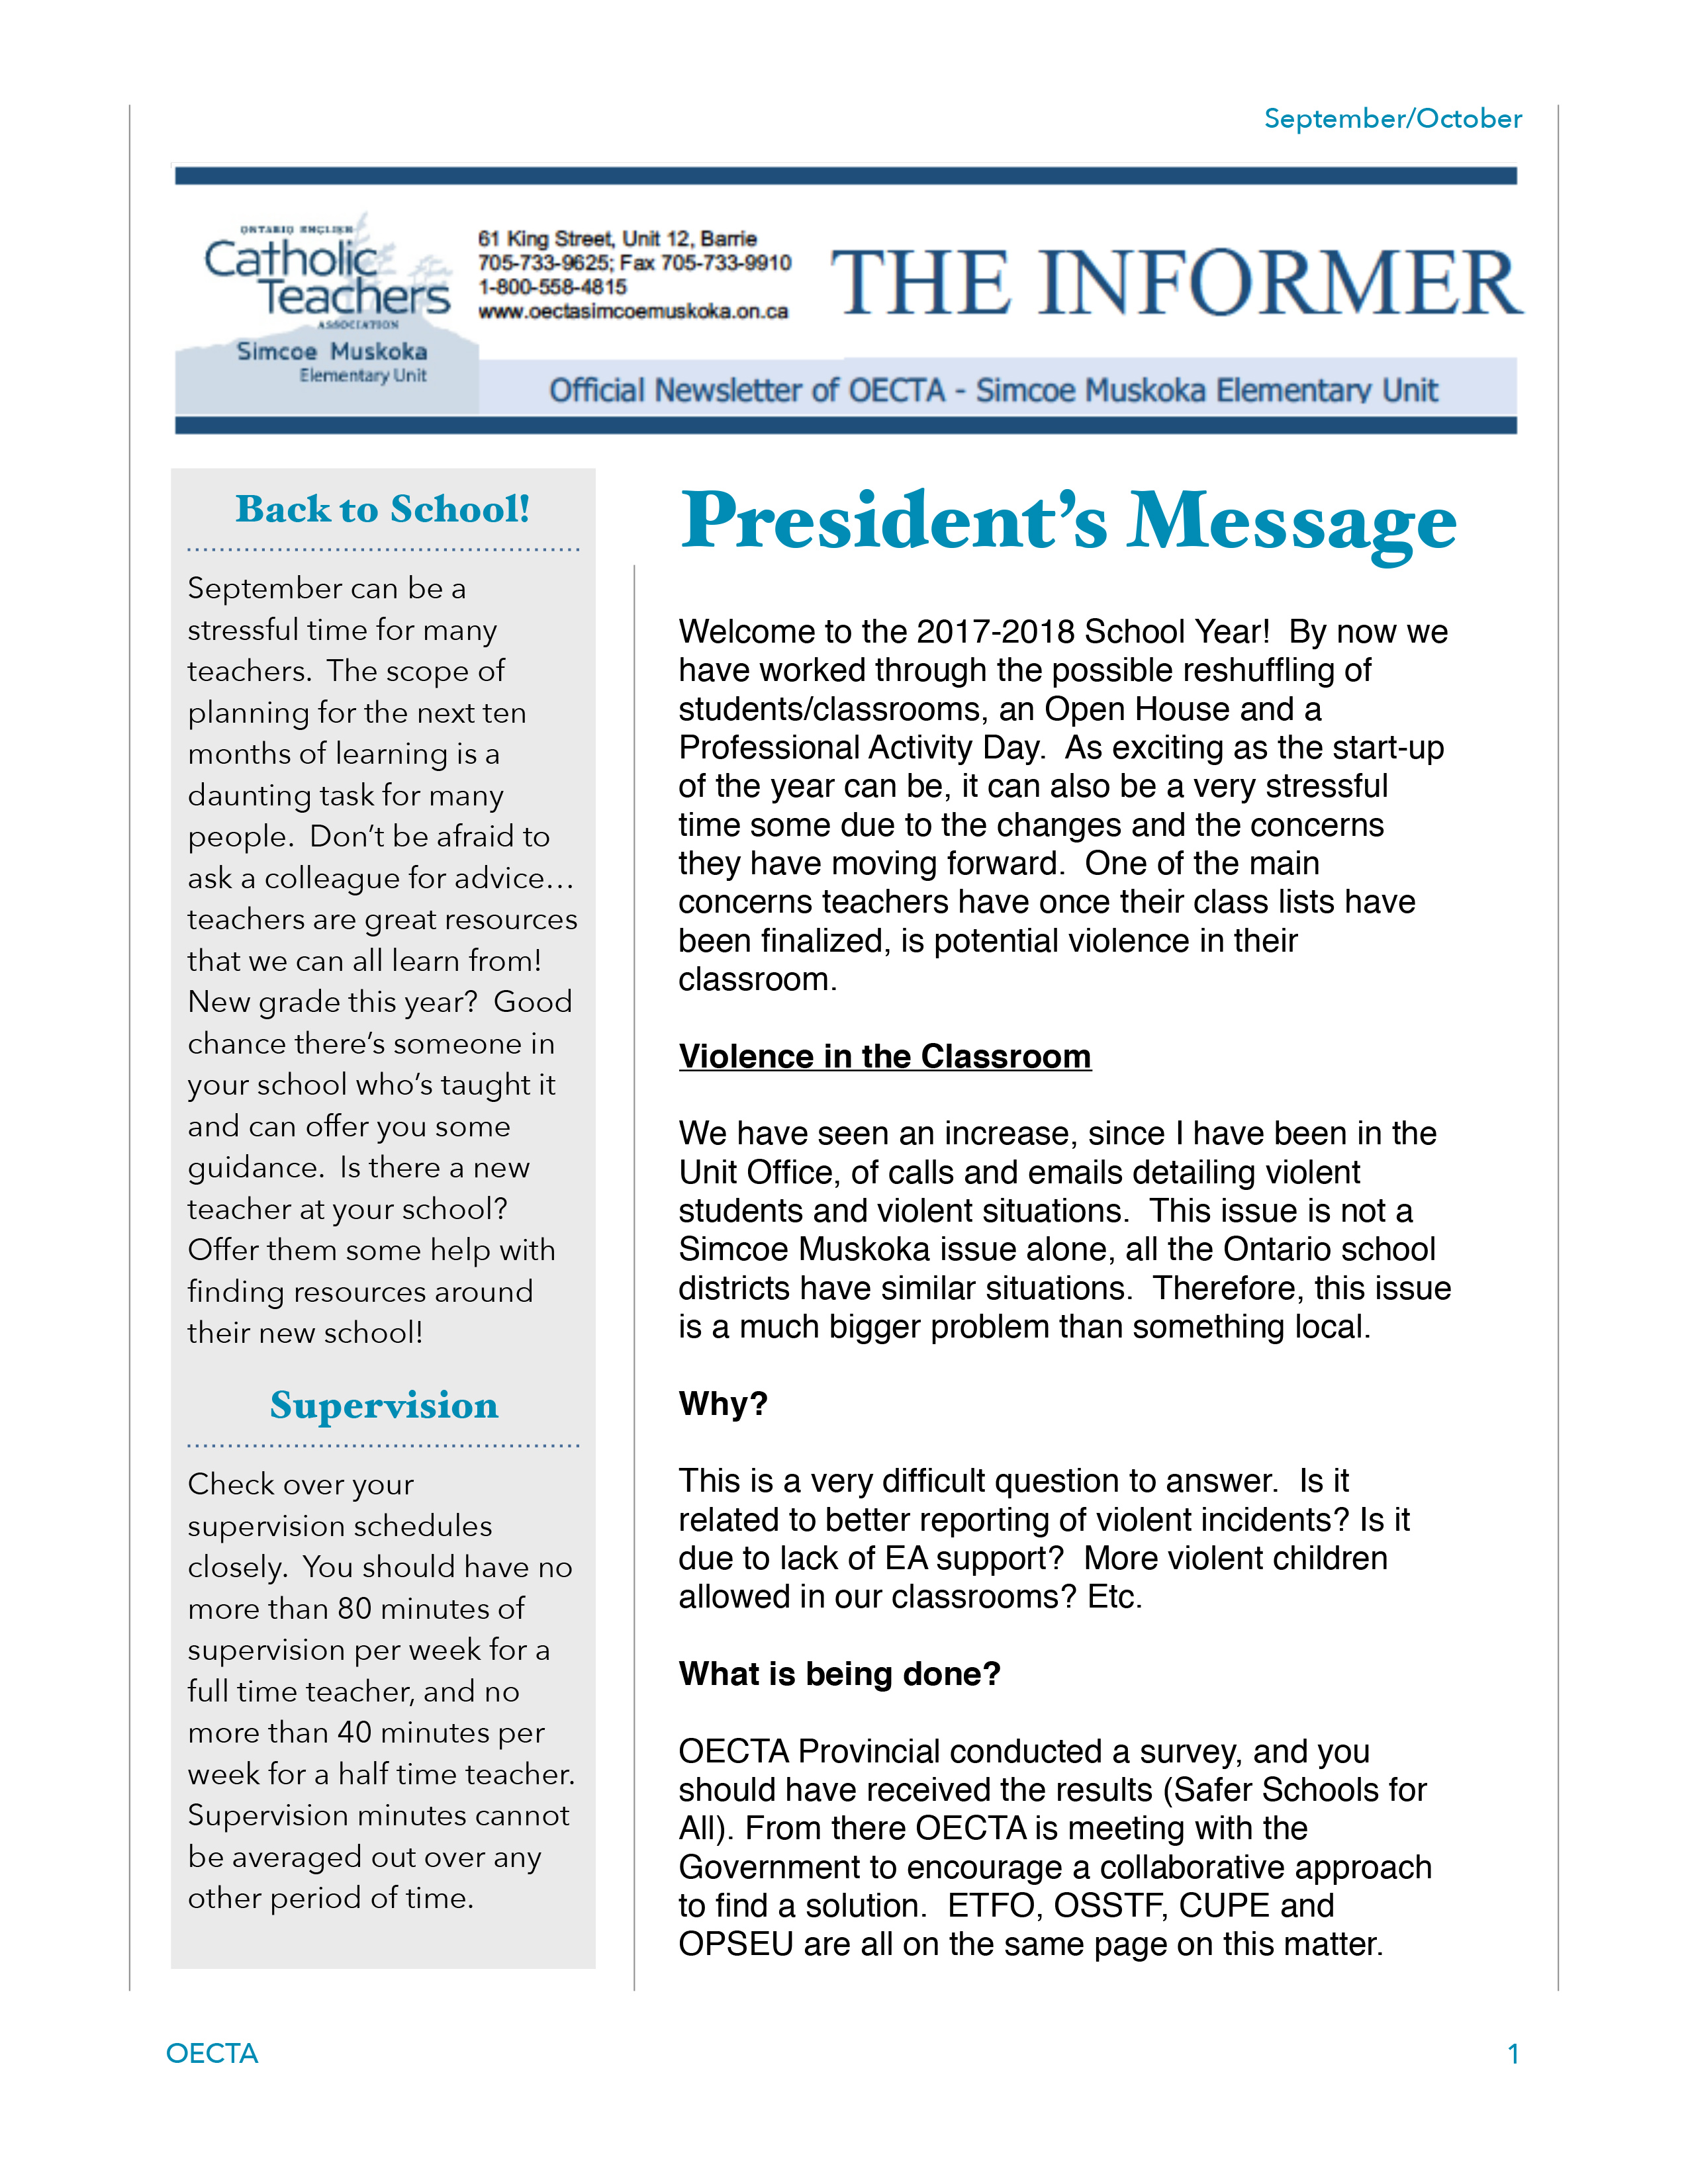 Jan-Feb-Informer-1